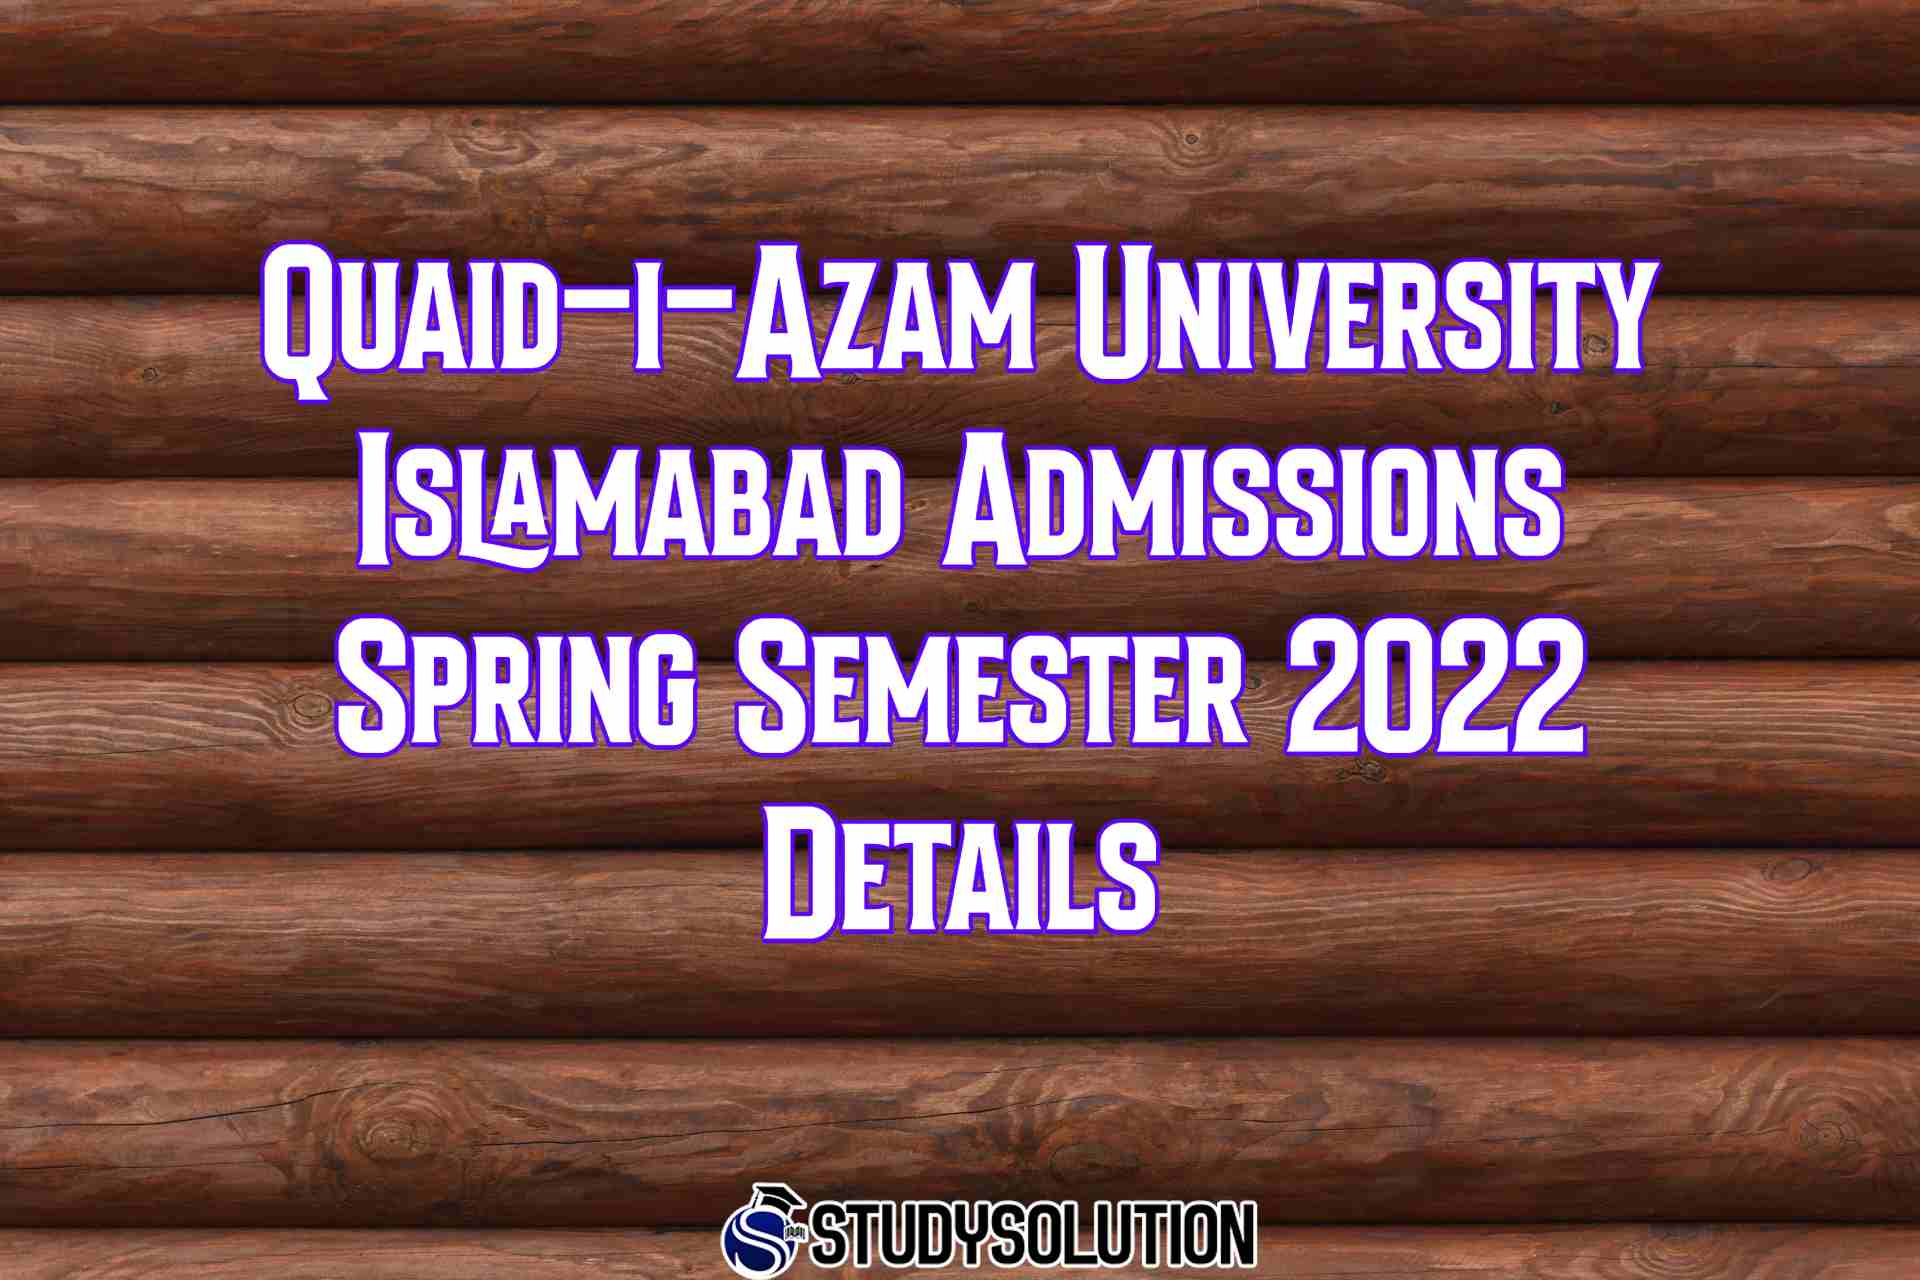 Quaid-i-Azam University Islamabad Admissions Spring Semester 2022 Details